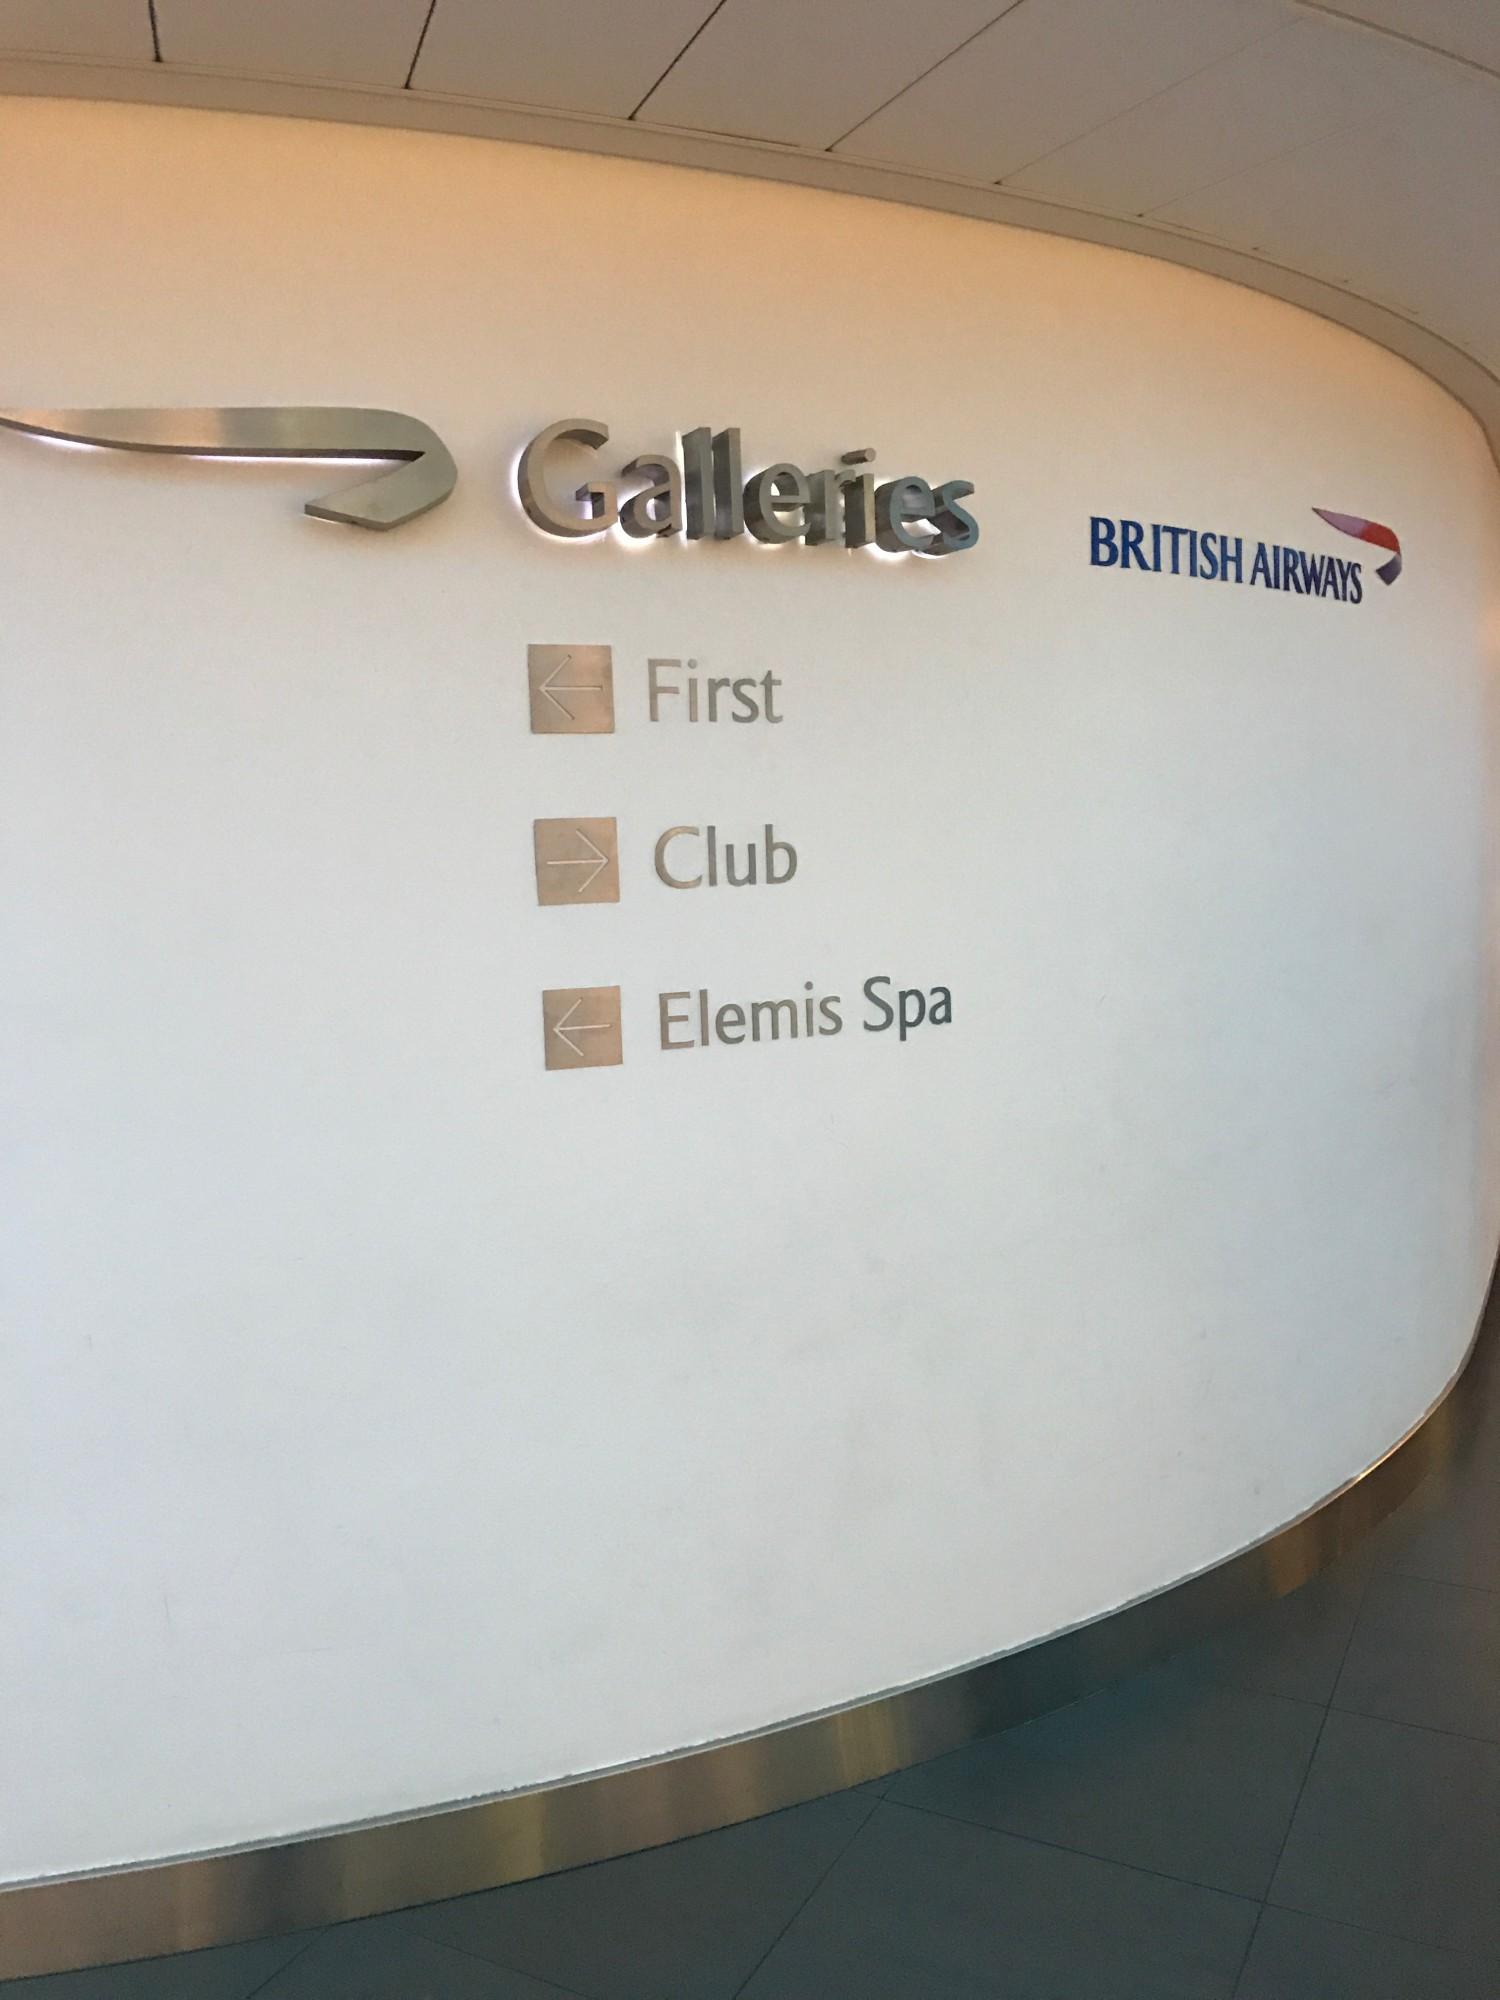 British Airways Galleries First Lounge image 24 of 38